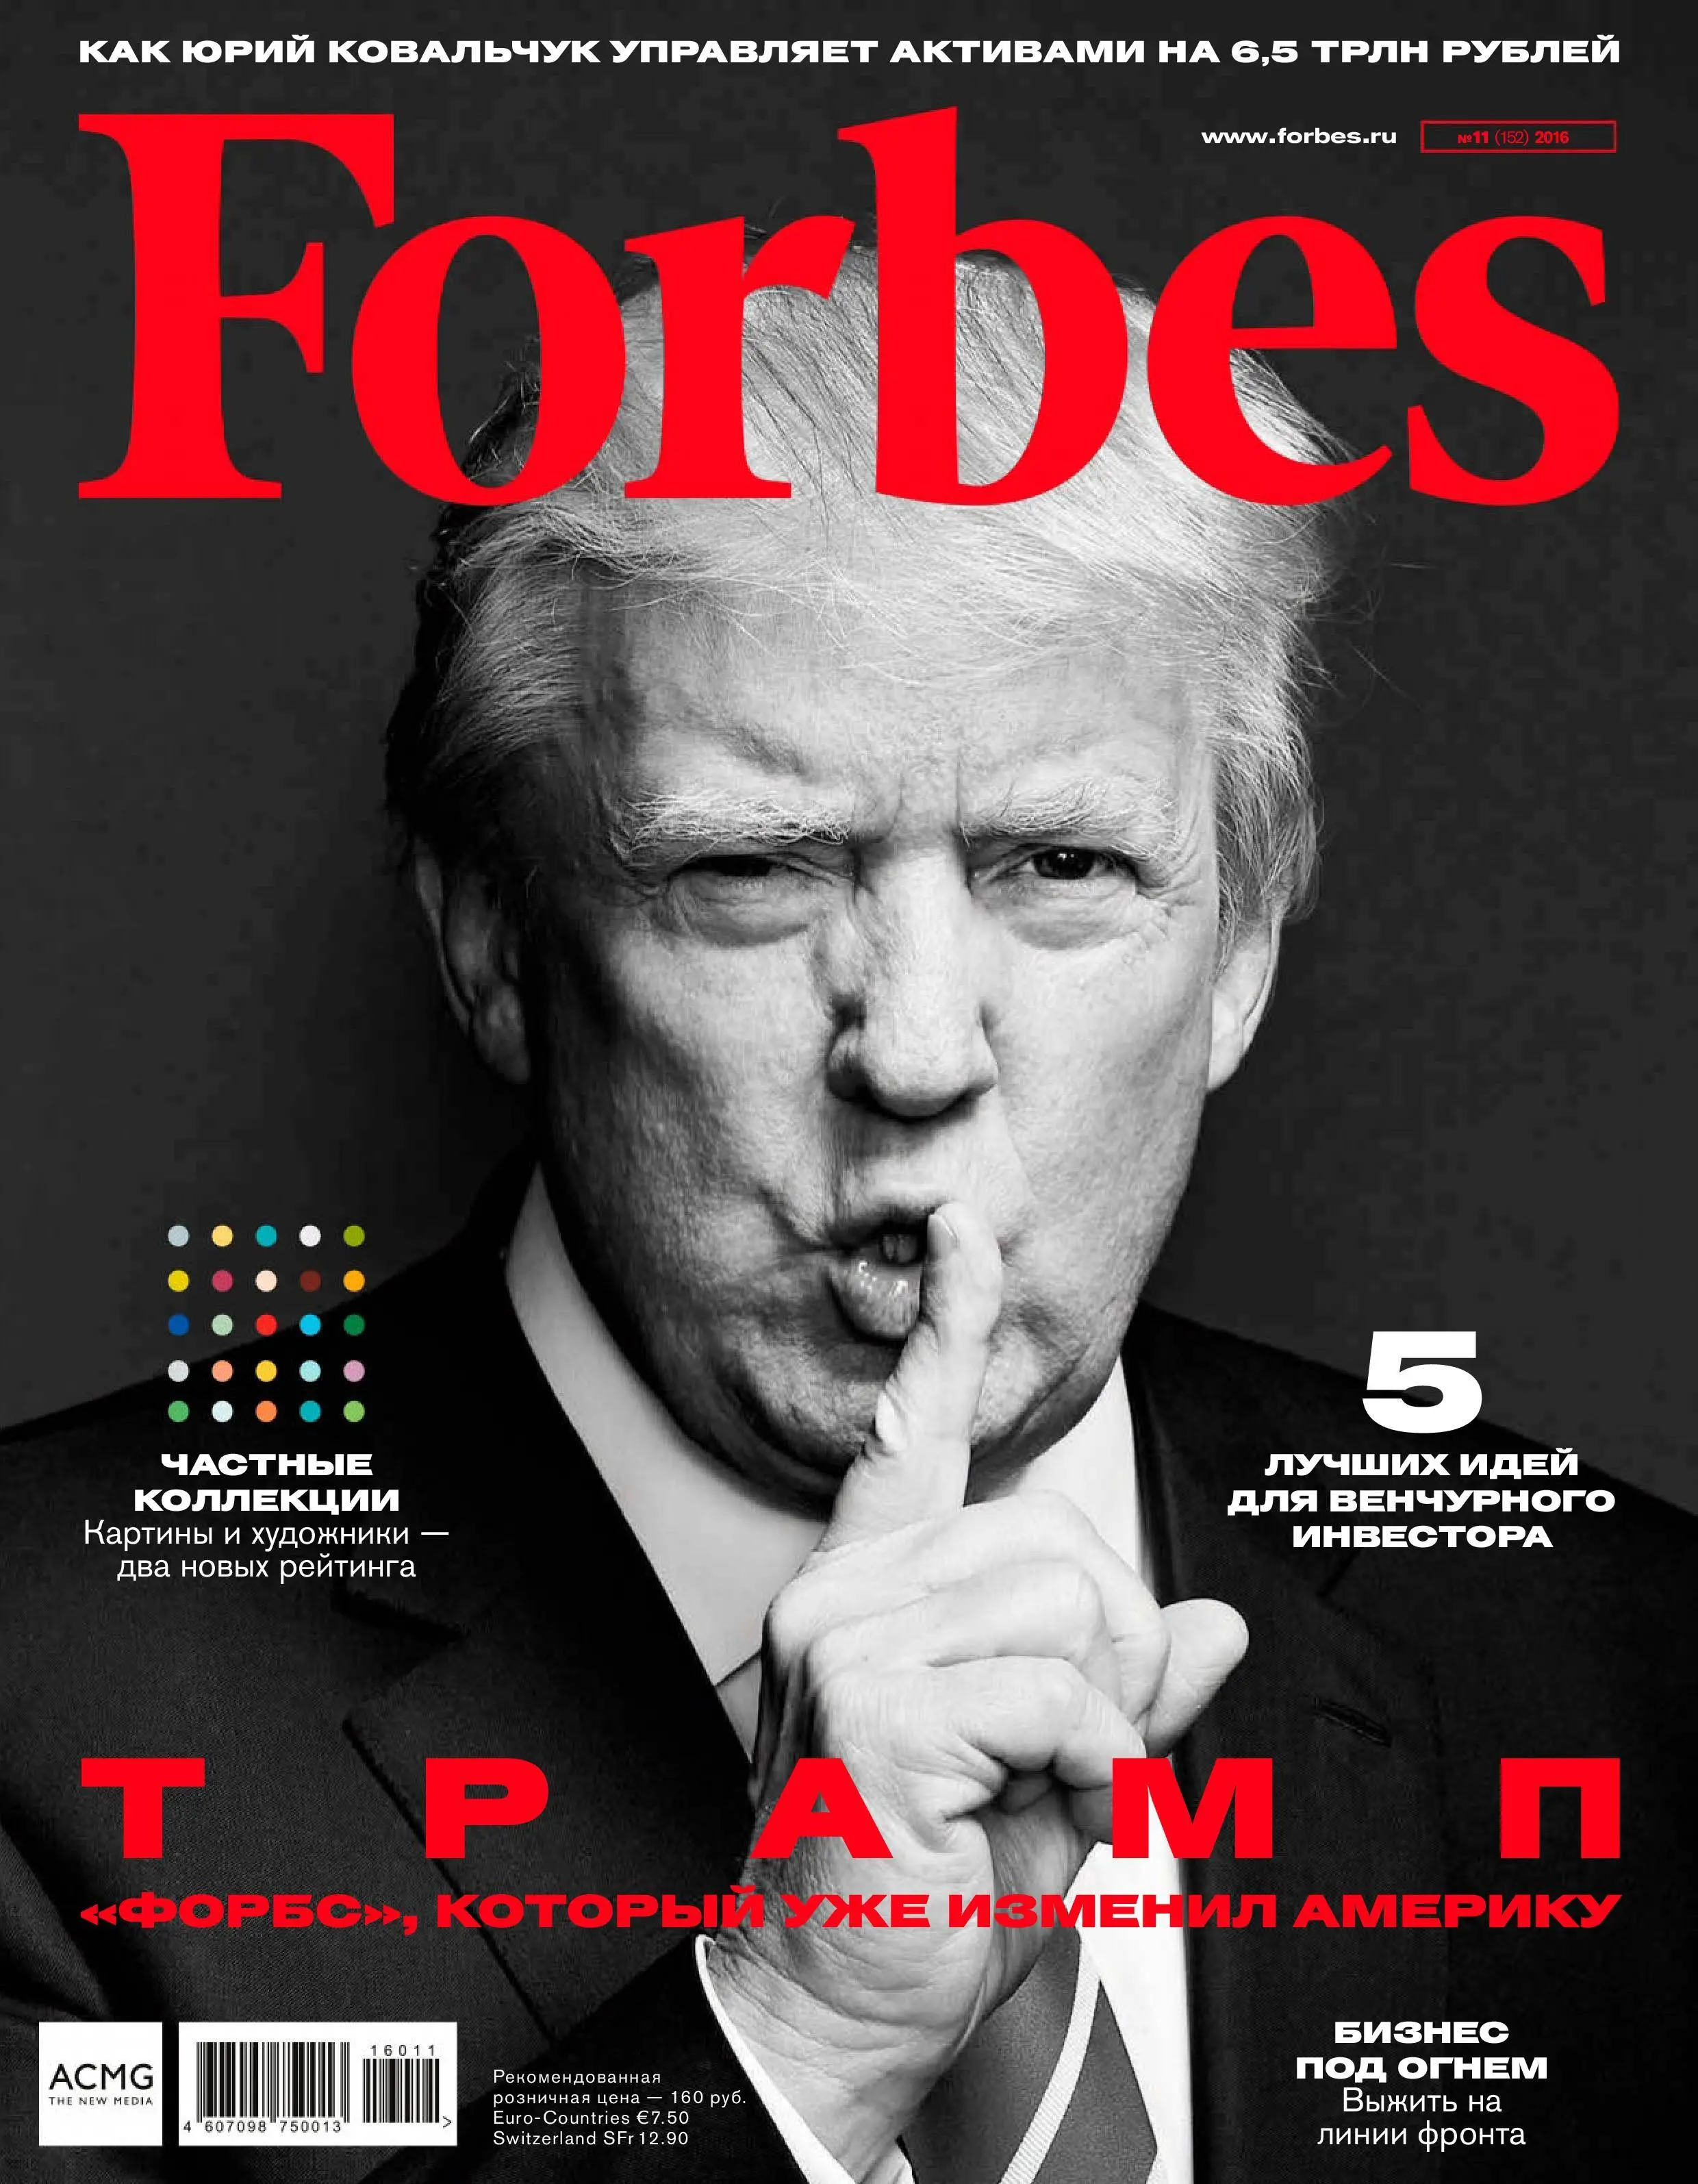 Обложка нового журнала. Forbes обложка. Журнал форбс. Обложка журнала Forbes. Обложка для журнала.